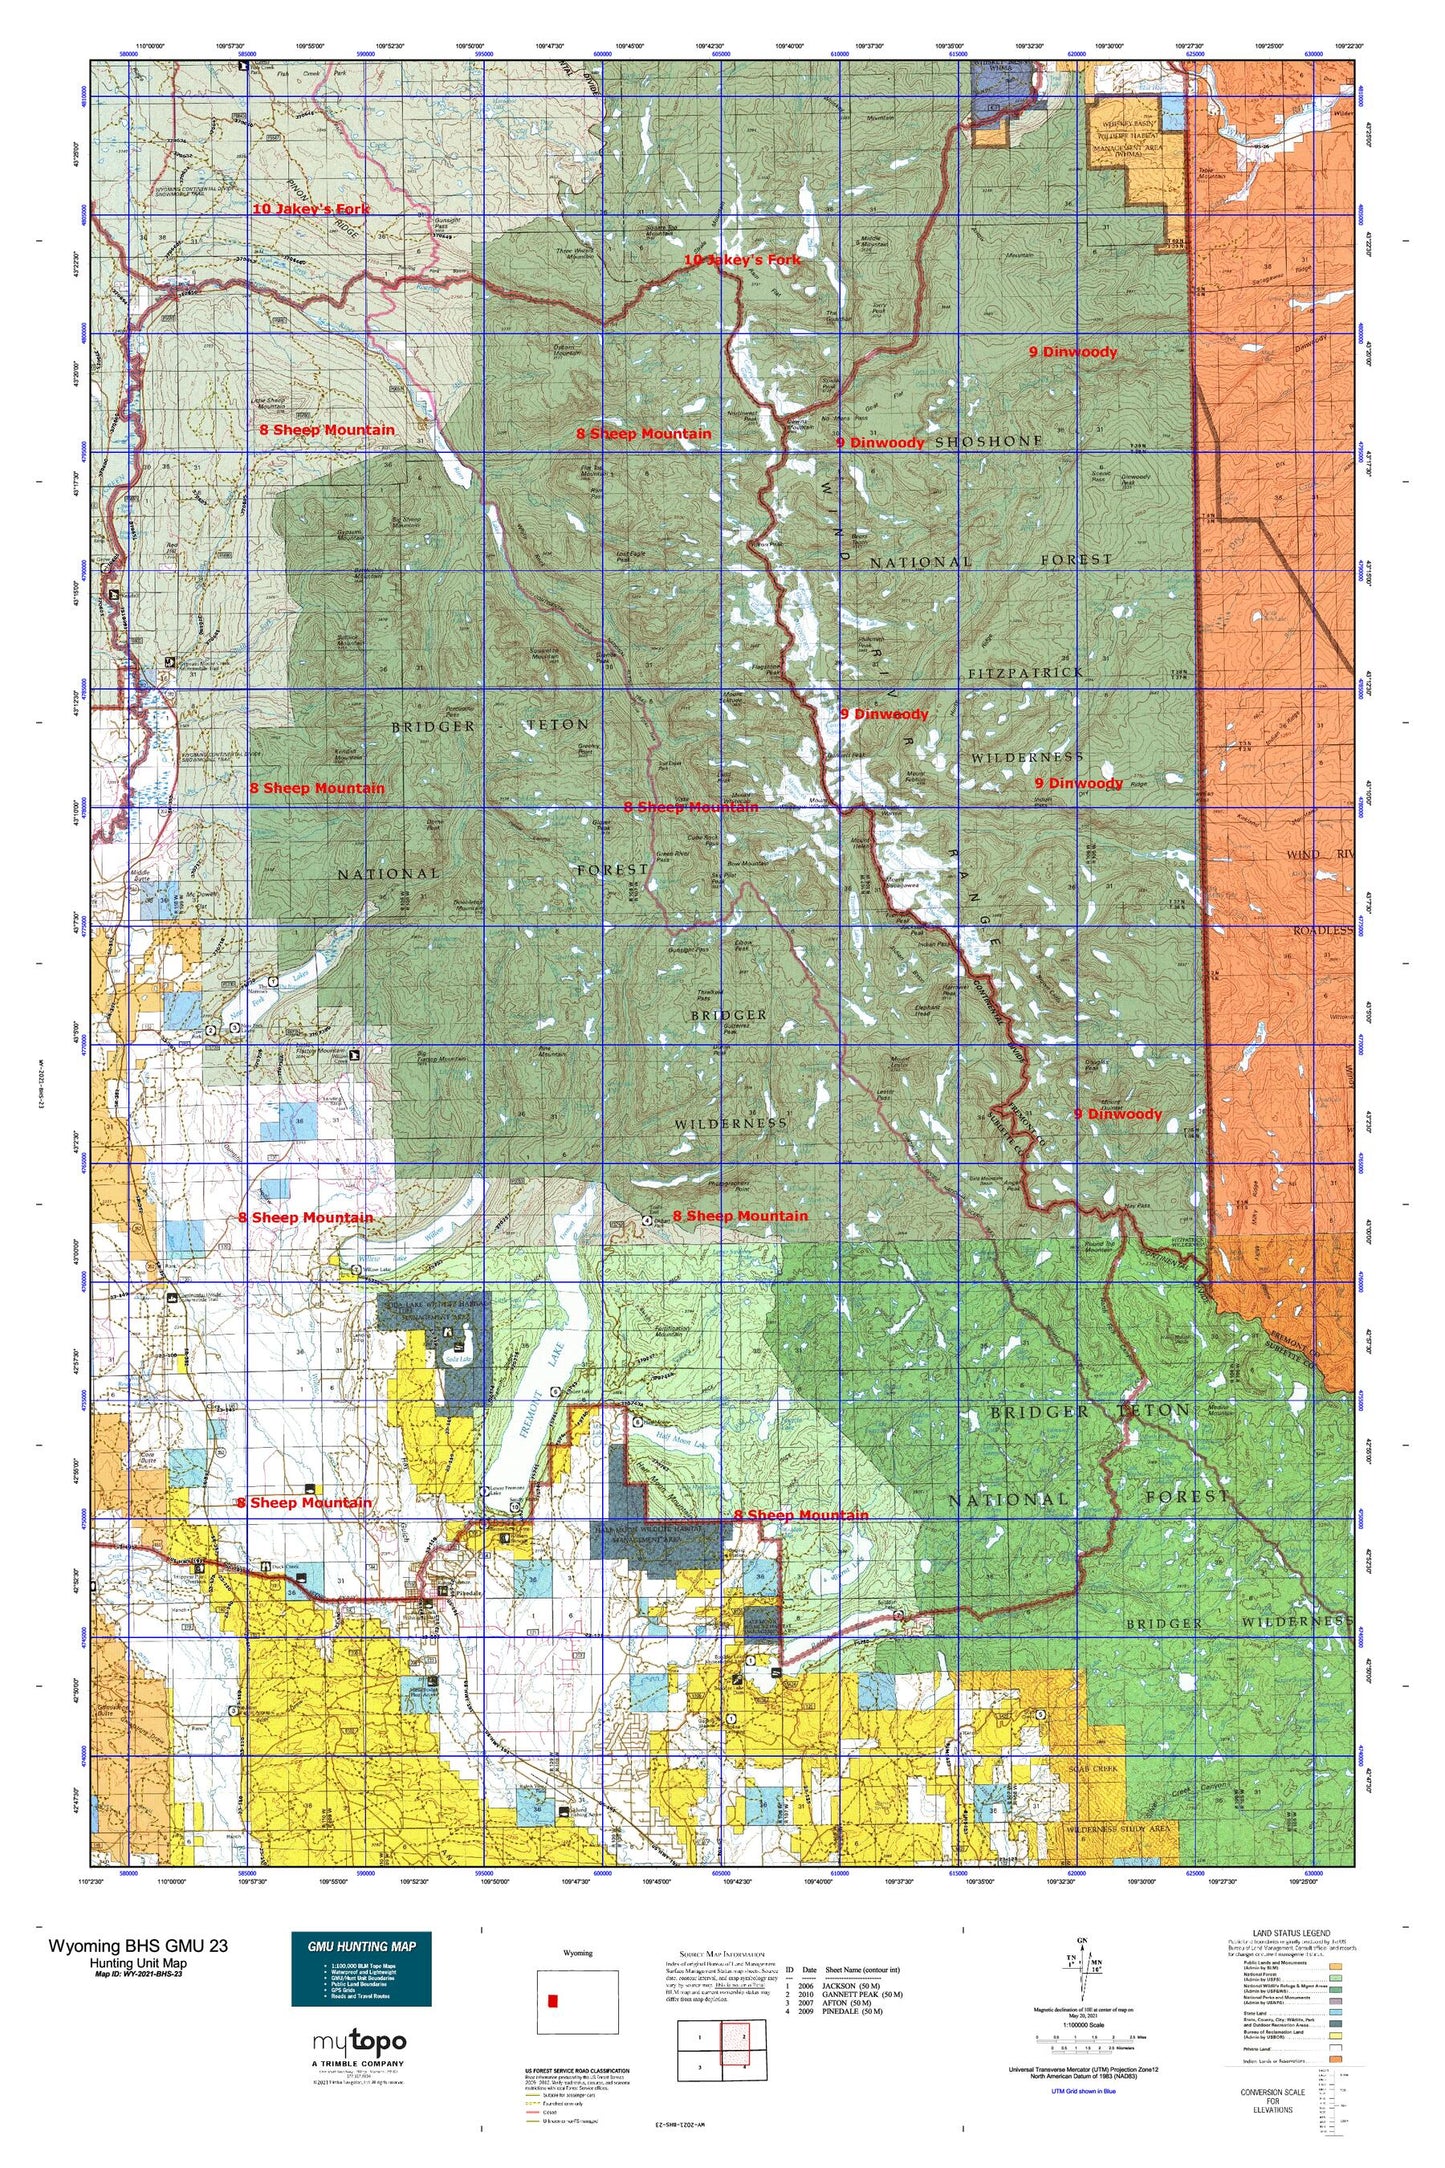 Wyoming Bighorn Sheep GMU 23 Map Image